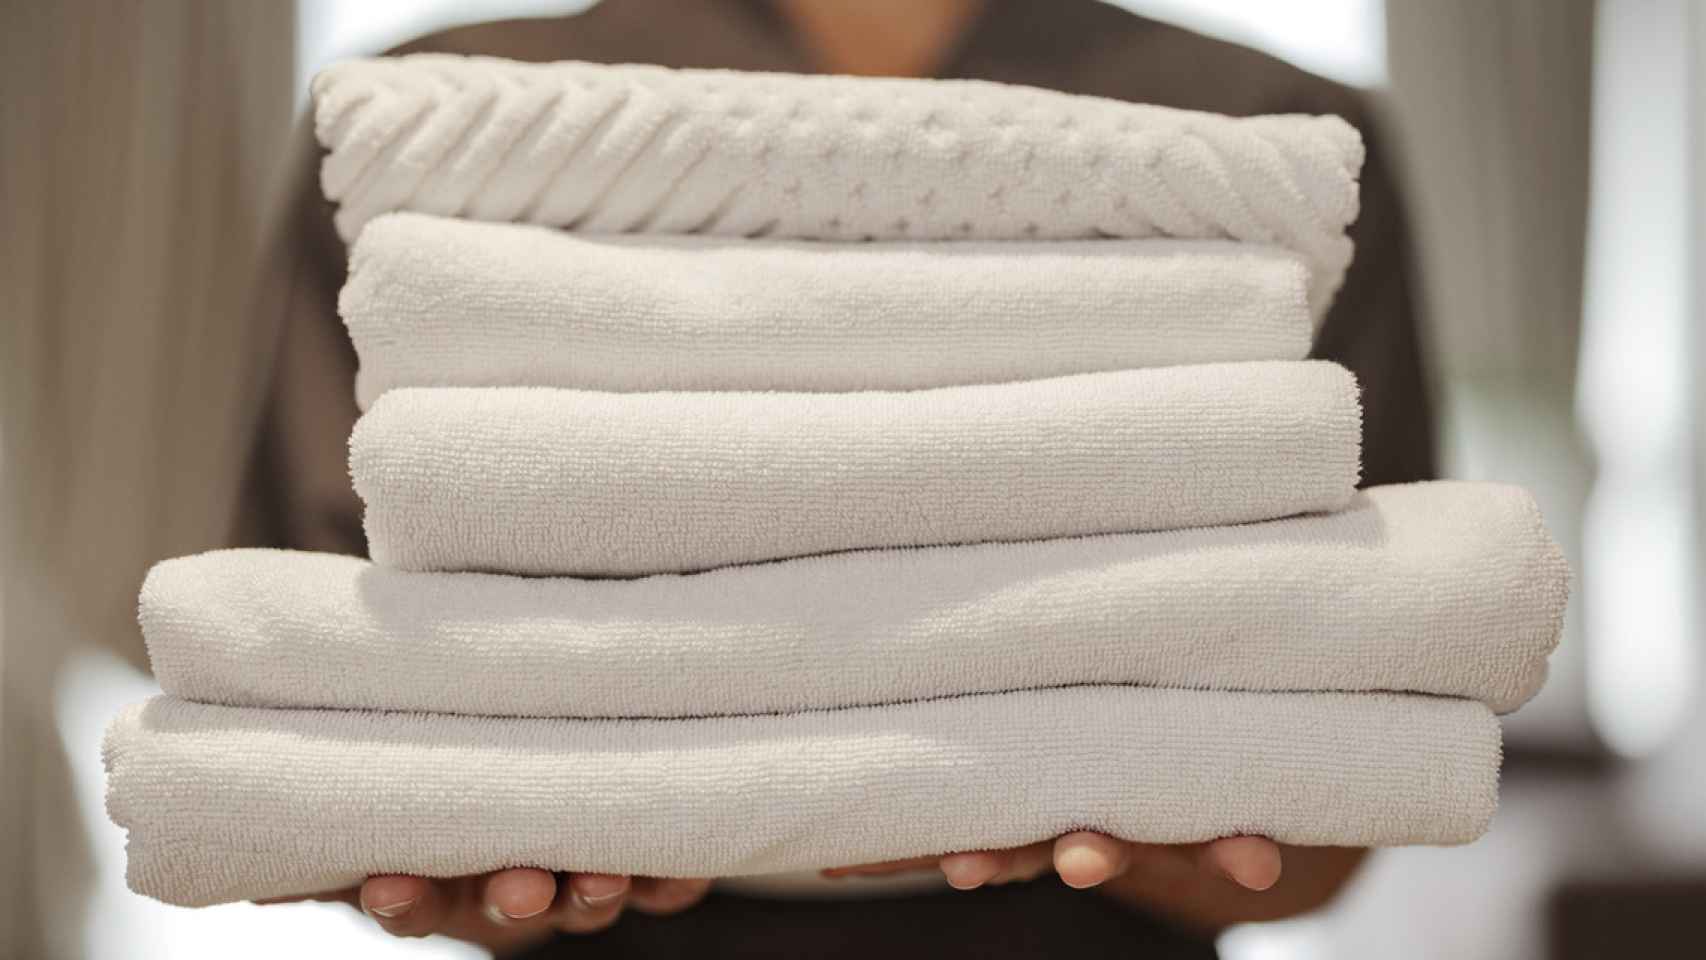 Cuáles son los tipos de toallas de hotel? - Noticias